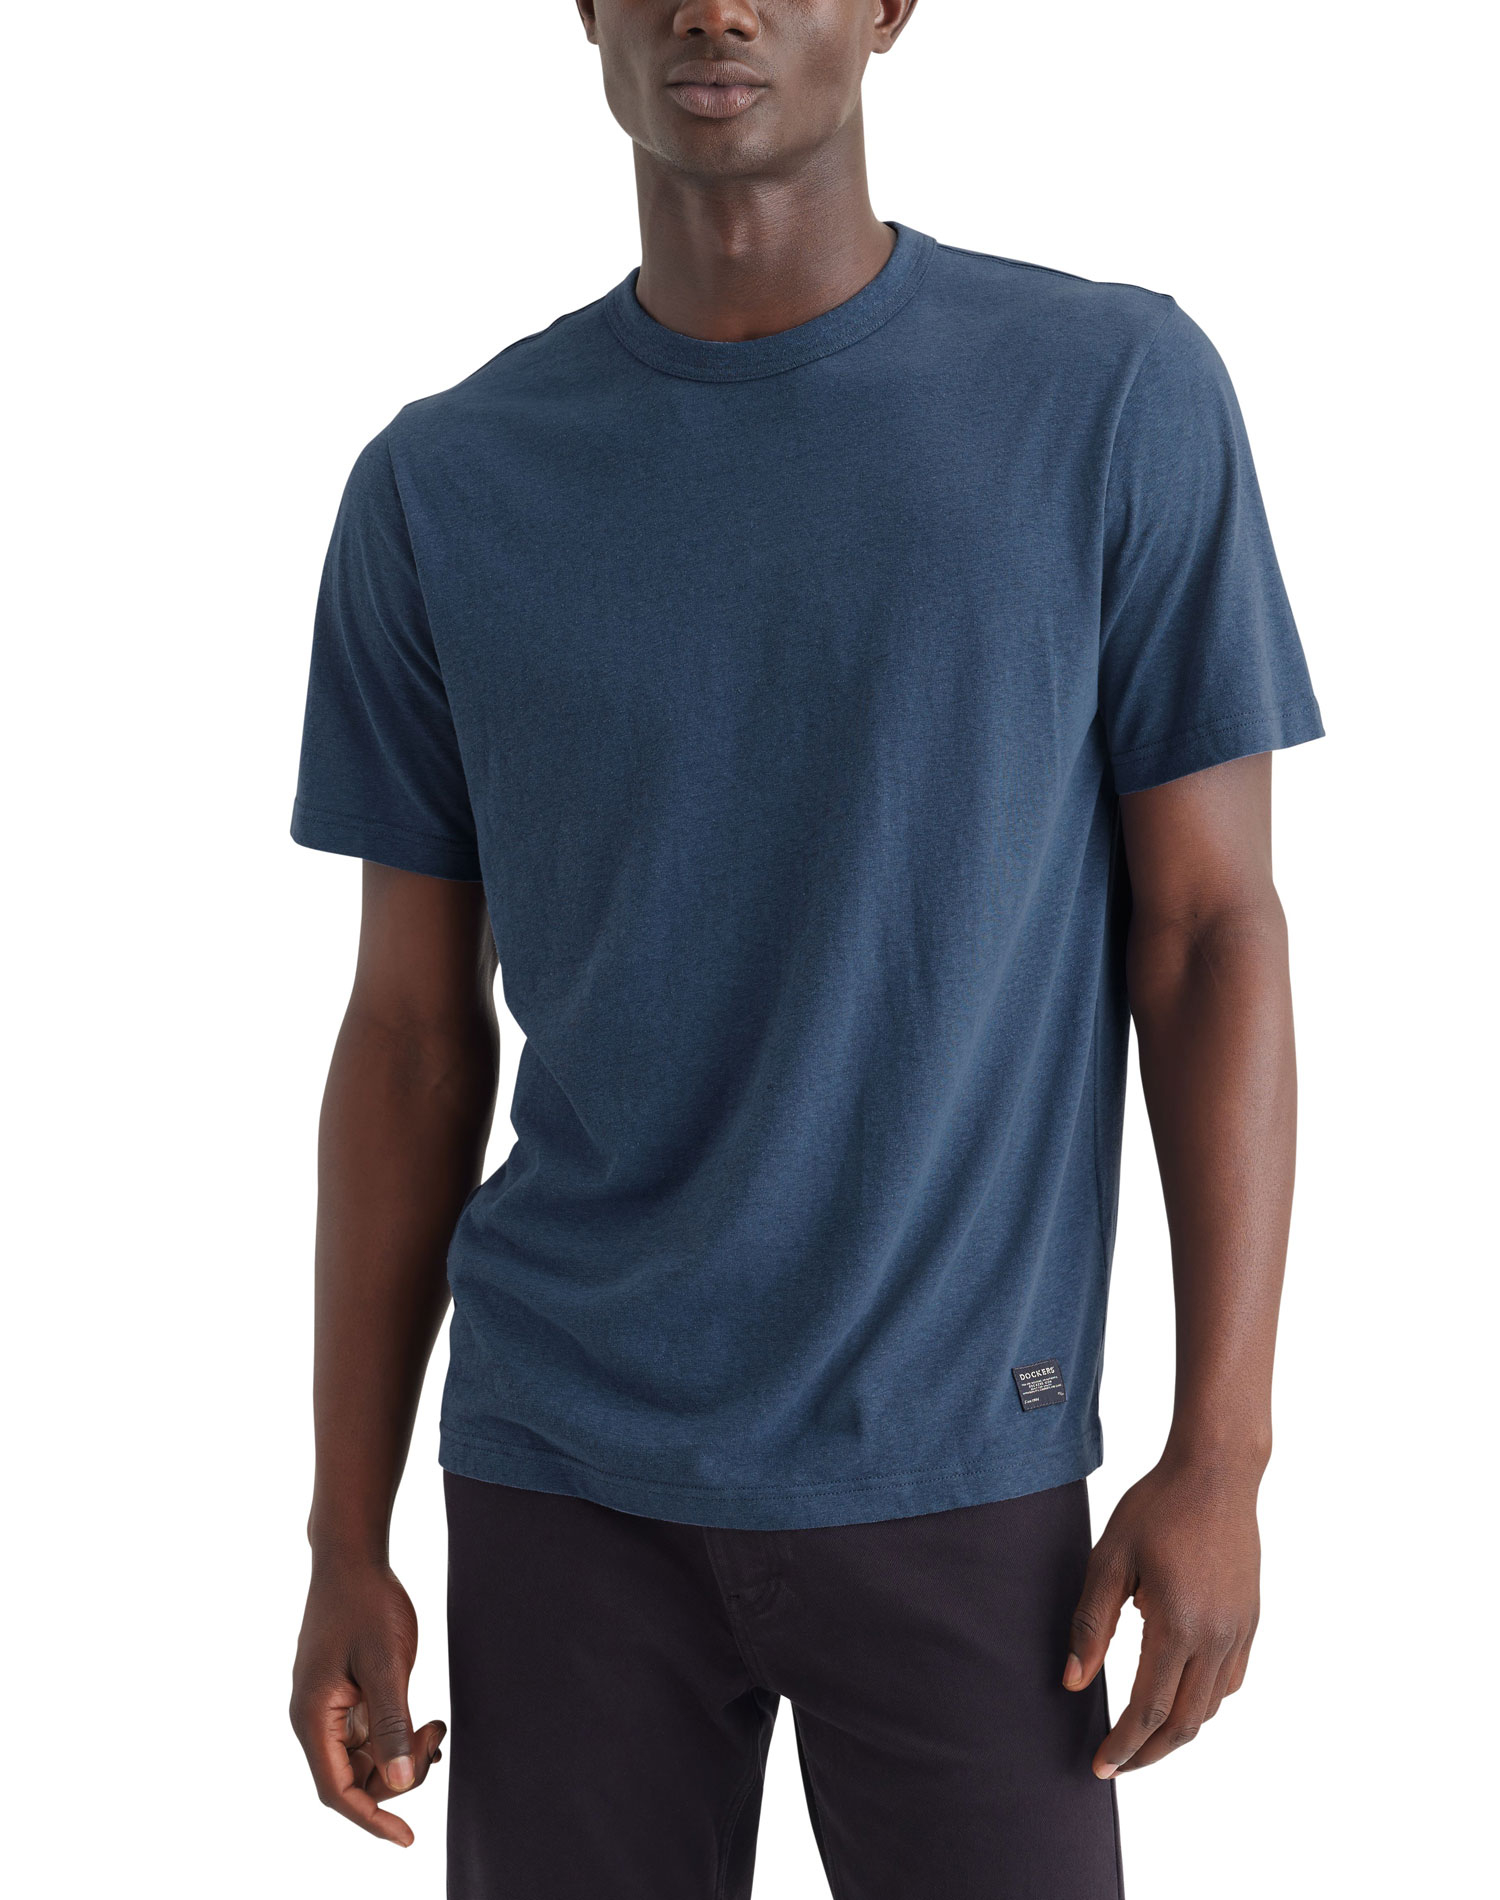 Dockers camiseta de hombre de m/c A6928-0003 azul